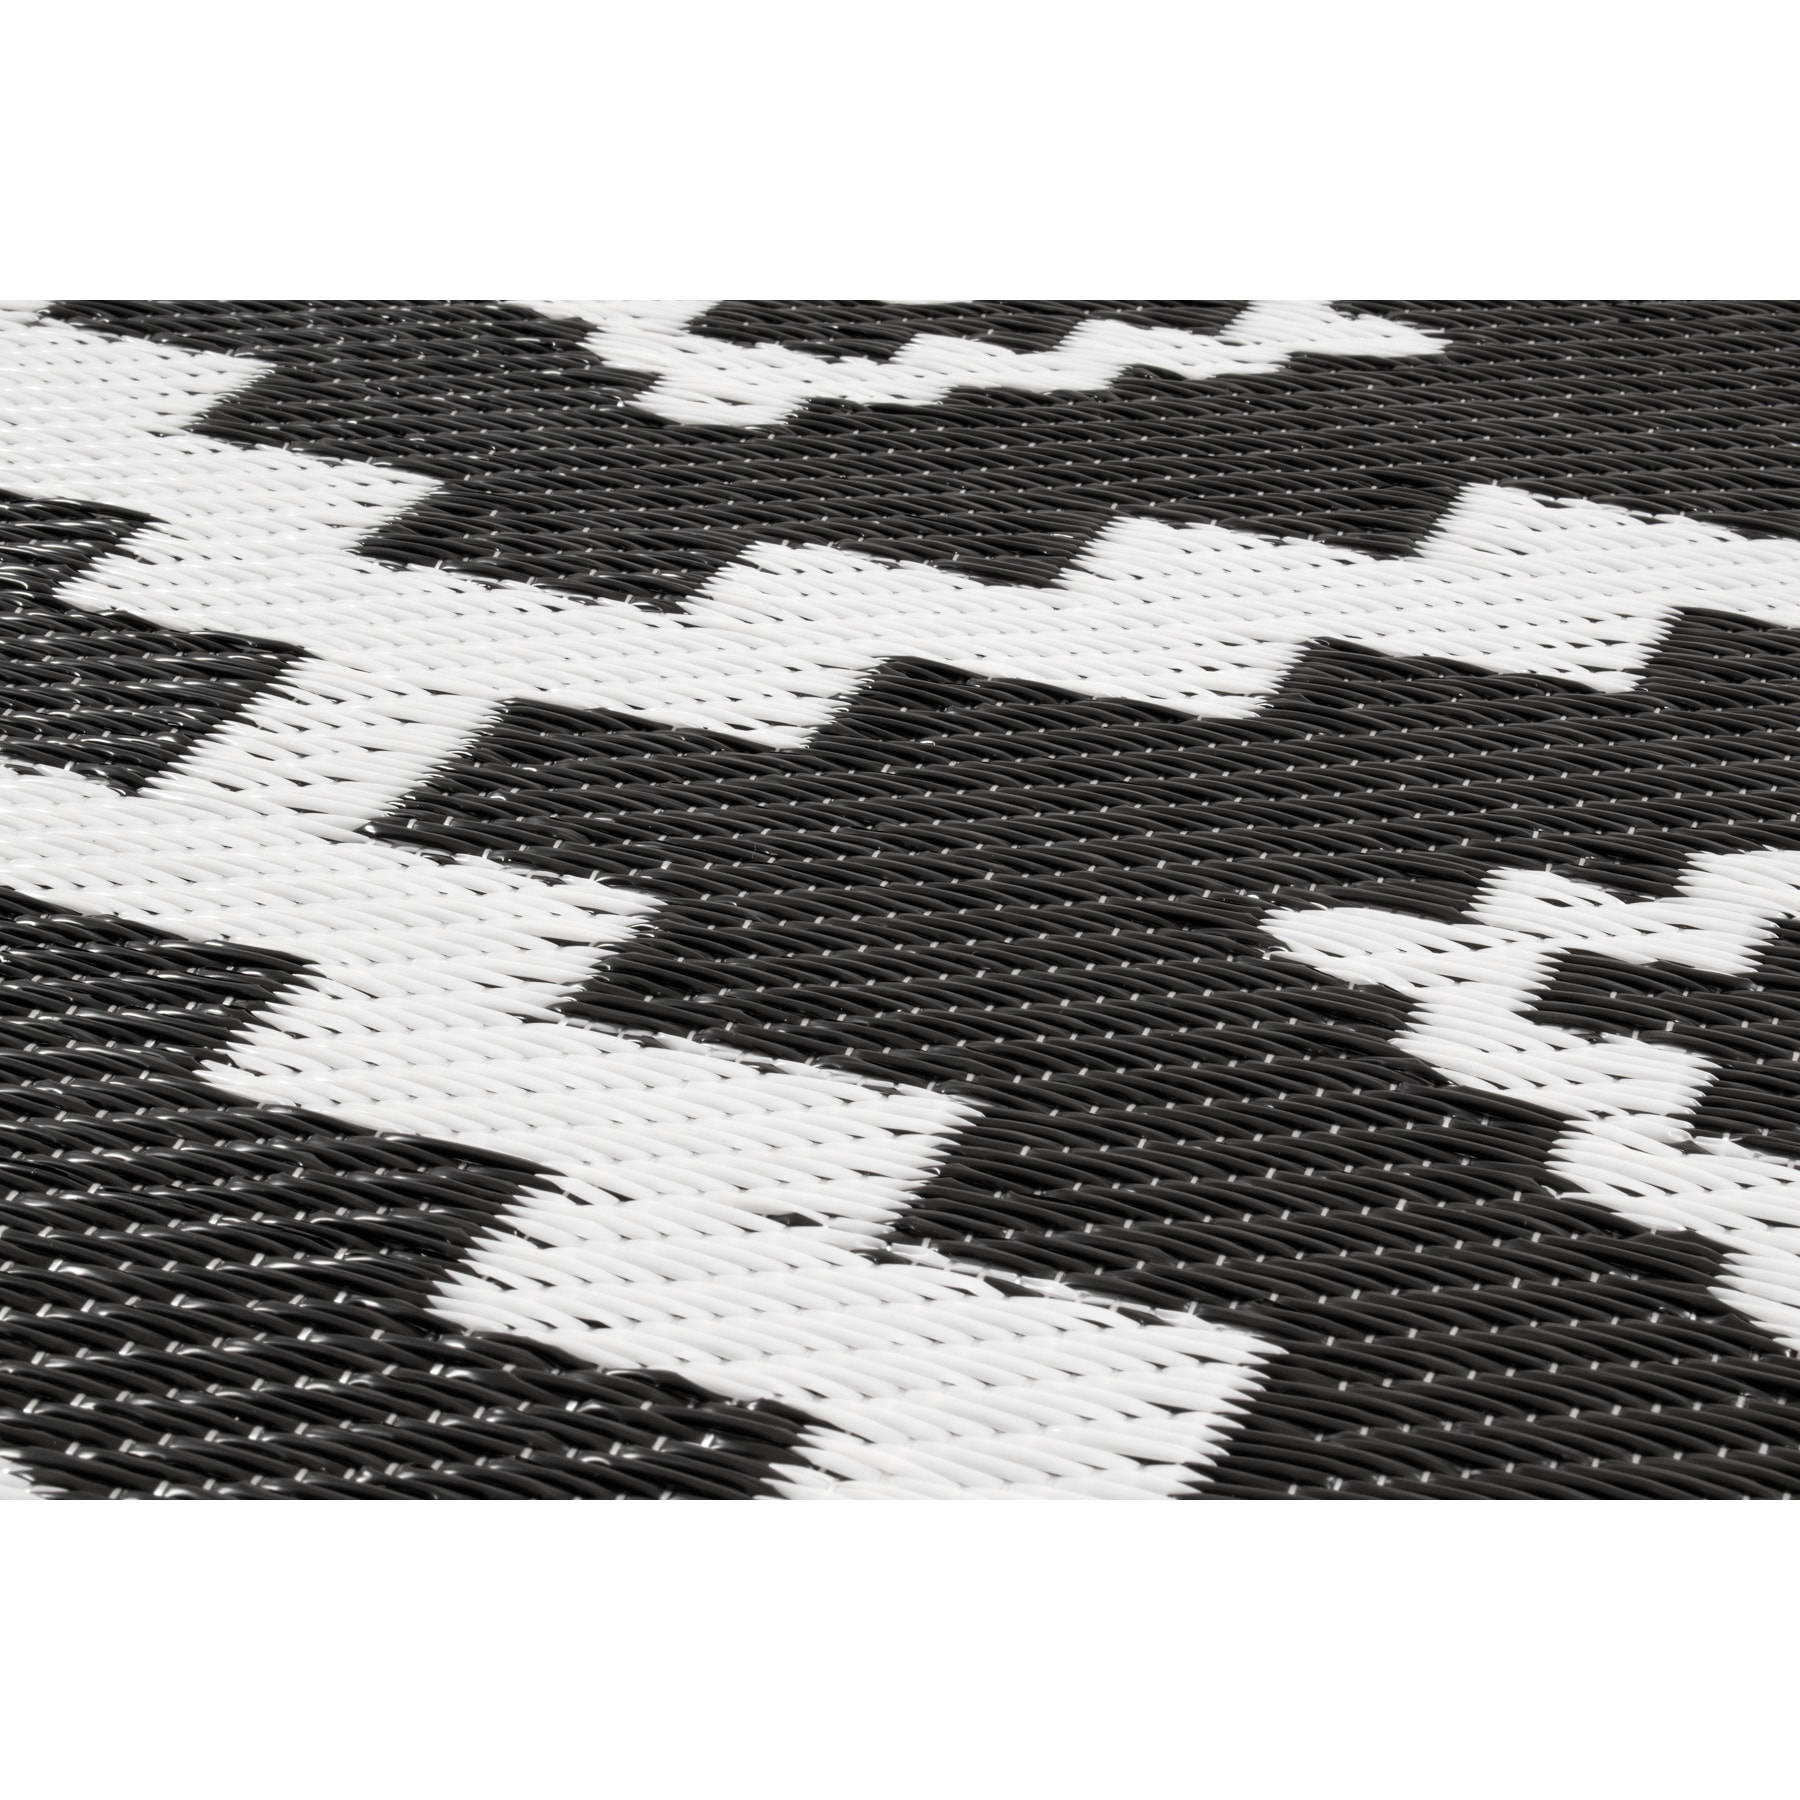 Scoobi - tapis d'exterieur noir et blanc motif ethnique